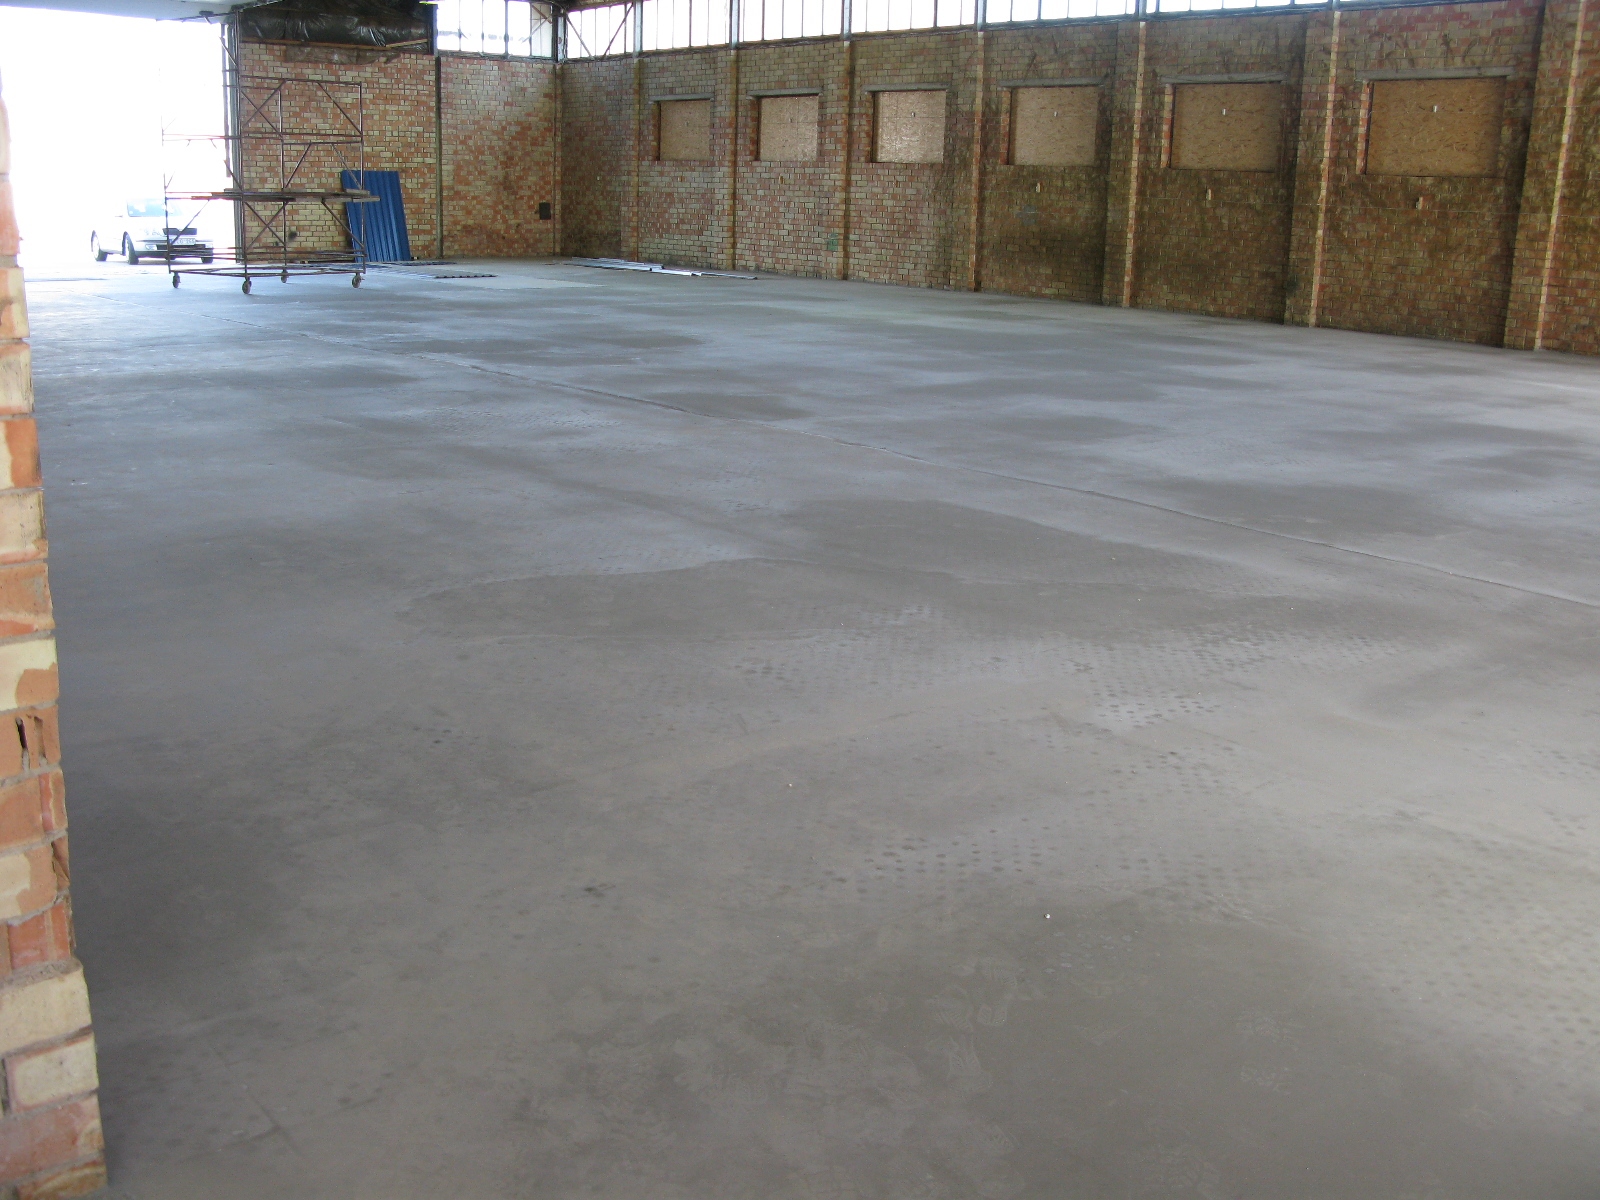 Savaime išsilyginantys cementiai misiniai, grindų danga, inovacinė drindų danga, pramoninė grindų danga, savaime išsilyginanti mišiniai, dangą betonine, pramoninė grindų mišinys, liejamos grindys, mišiniai cemento pagrindu, plonasluoksnė pramoninė grindys, grindų sistema, betoninių grindų problemos, grindų apsauga, chemini apsauga, grindų renovacija, grindų remontas, betoninių grindų remontas, spalvotas grindys, polimerines dangos, greitai džiūstantis grindys, remontinis mišiniai, greitai liejamas, lanksti grindų sistema, liejama spalvota grindų danga, cheminė premonė betonui, betono apsauga, inovacine grindų danga,3D danga, dekoratyvine danga, loft danga, grindu renovacija.